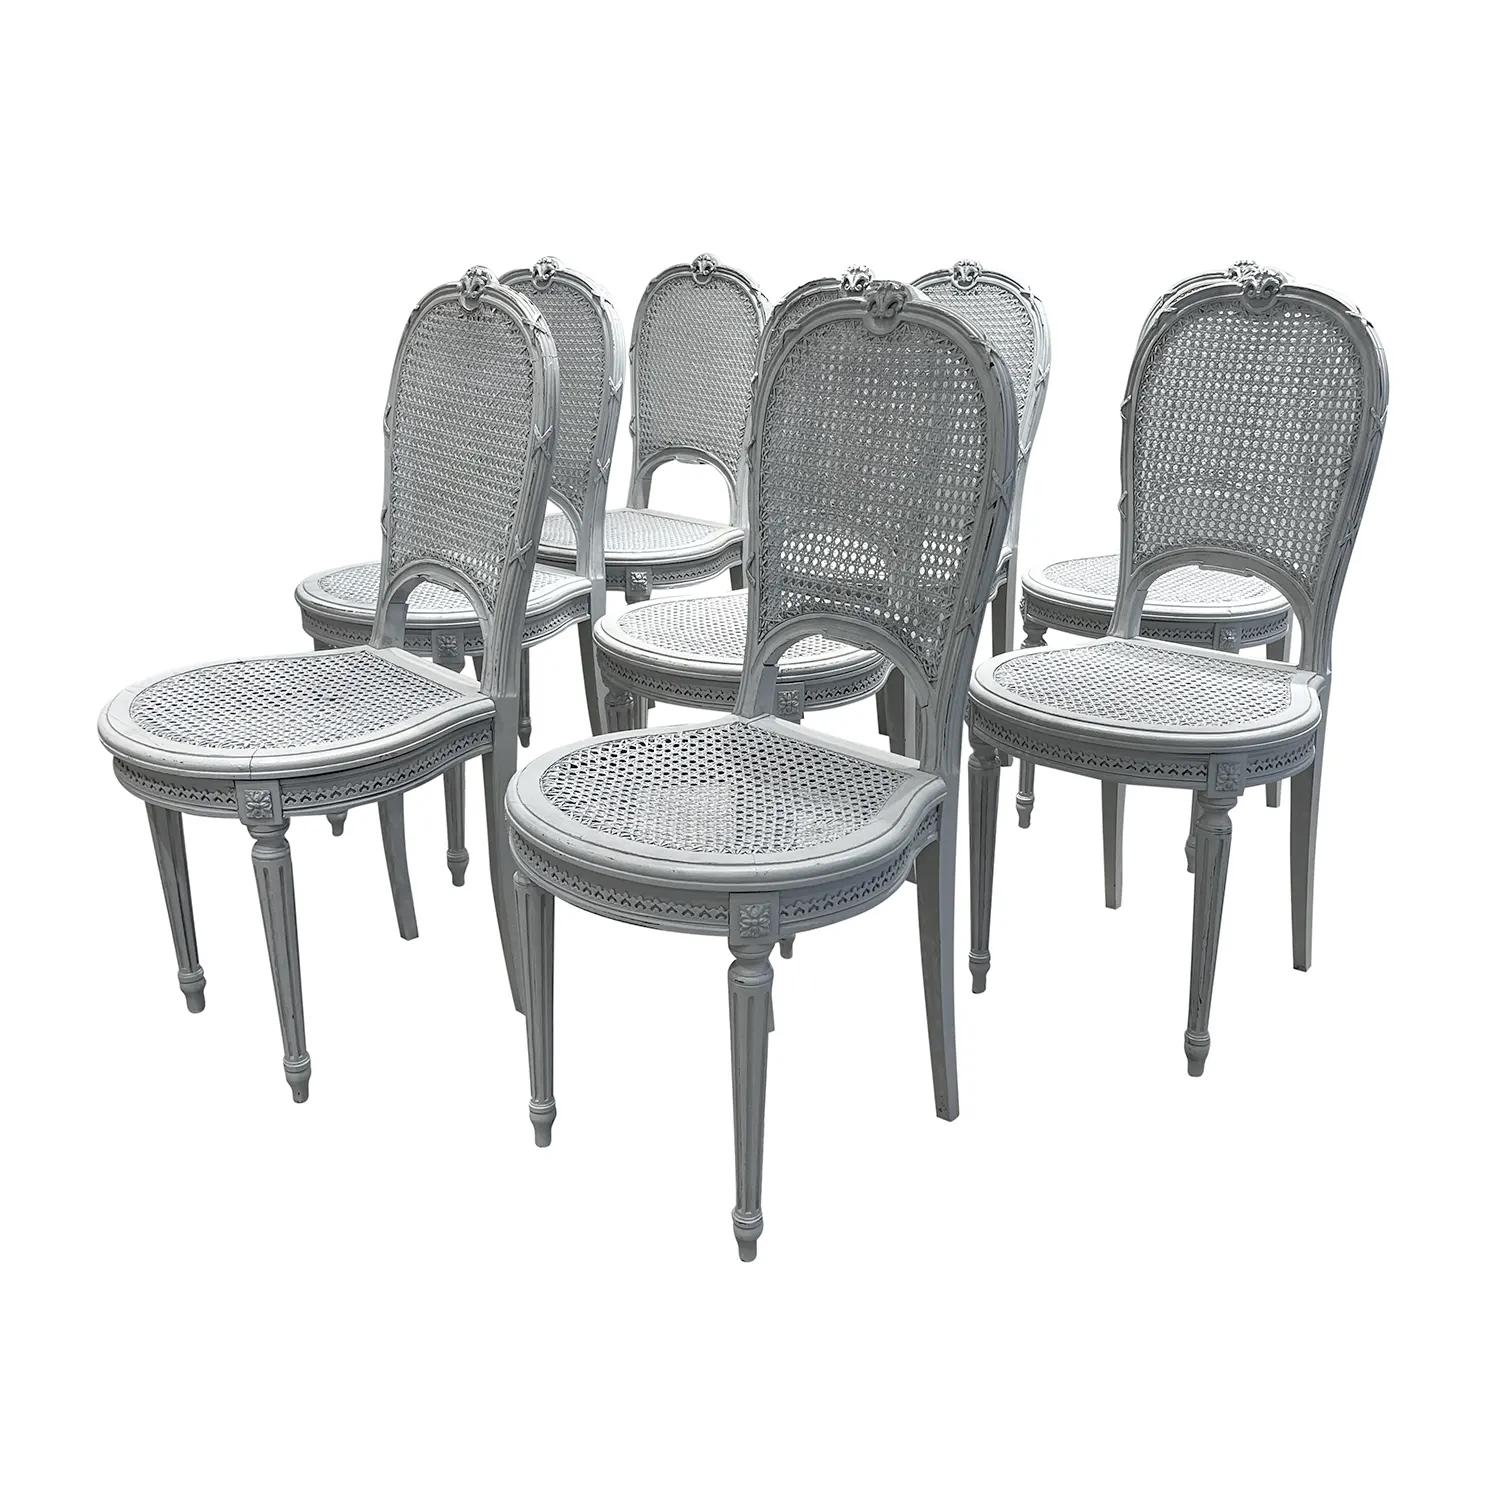 Antiker Satz von acht Esszimmerstühlen im Stil Louis XVI aus handgeschnitztem Kiefernholz, in gutem Zustand. Die skandinavischen Beistellstühle in kalkgrauem Finish haben eine abgerundete Rückenlehne aus Schilfrohr, eine Sitzfläche aus Schilfrohr